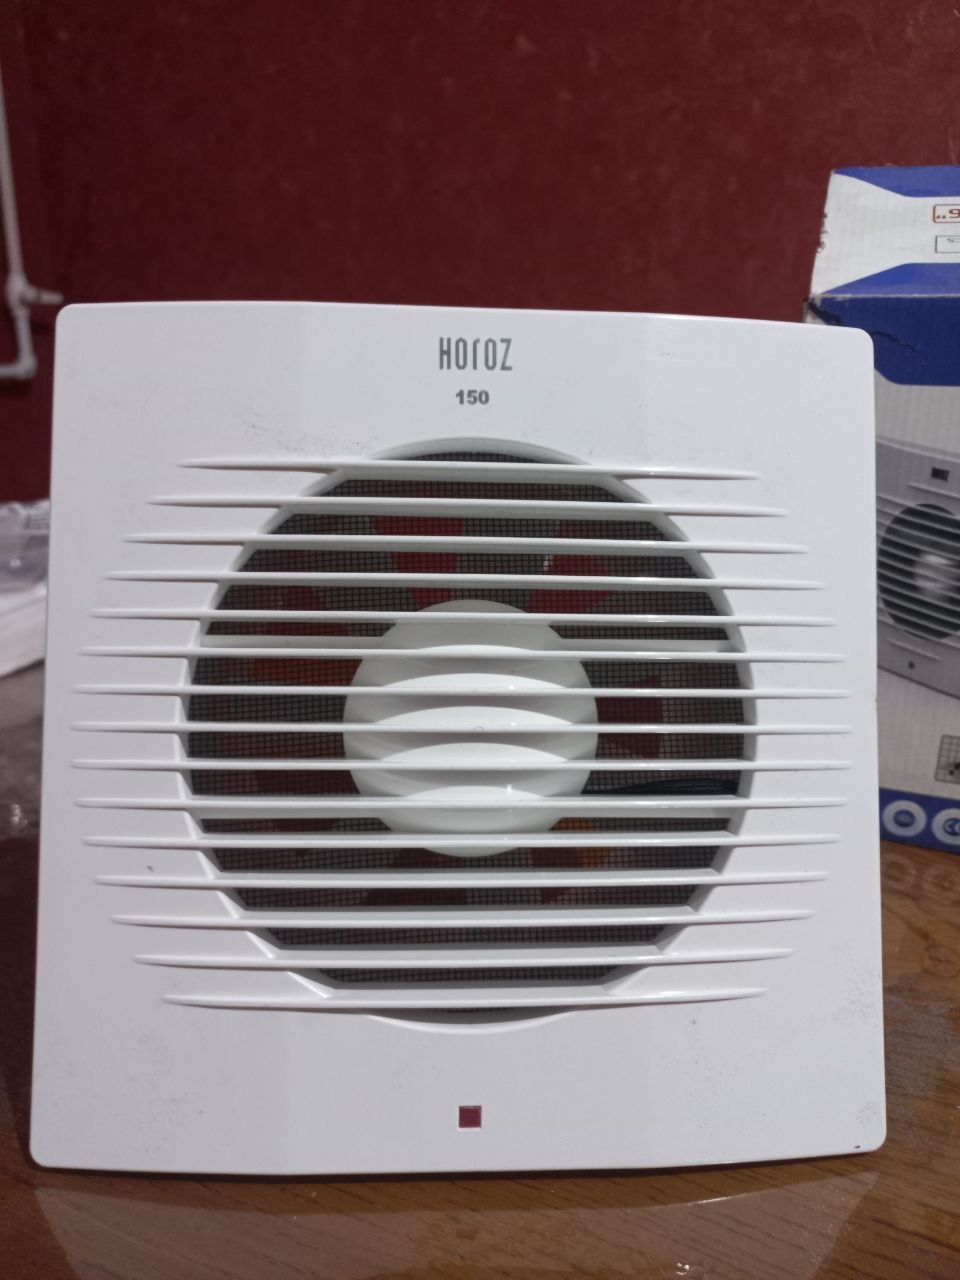 Вытяжной вентилятор, Horoz electro, Турция,диаметр 150мм
Вытяжной вент